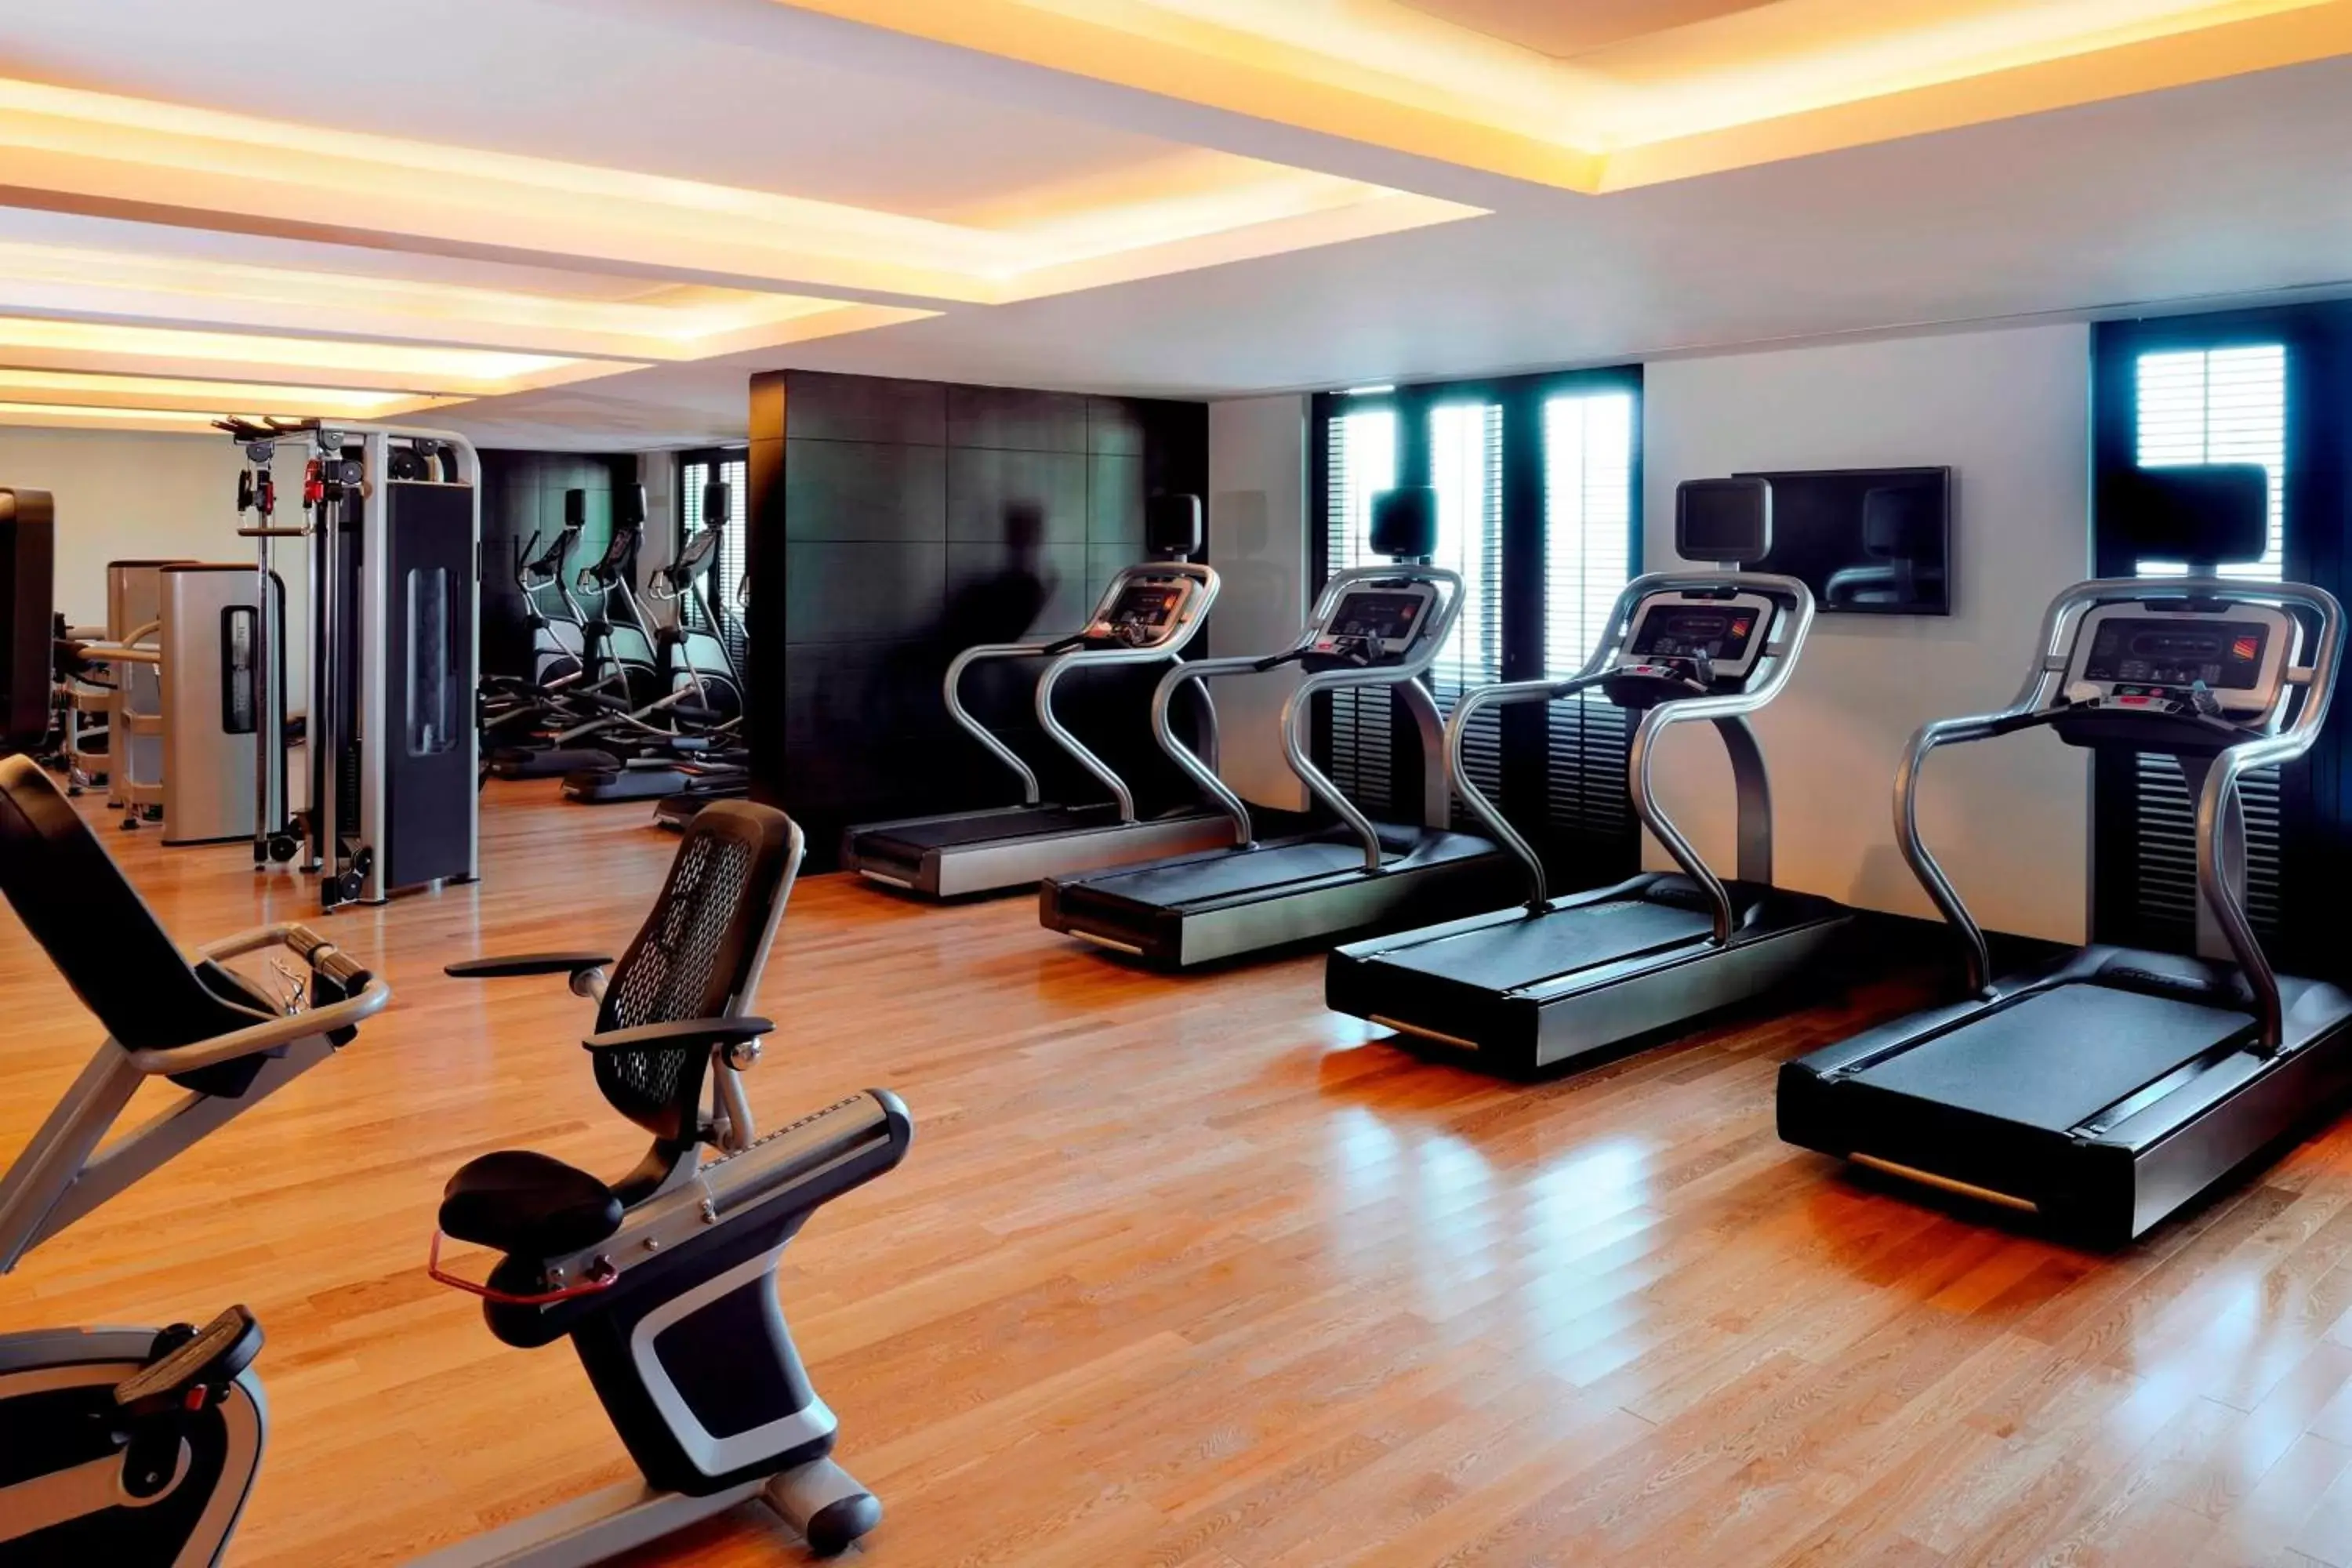 Fitness centre/facilities, Fitness Center/Facilities in Marriott Hotel, Al Jaddaf, Dubai